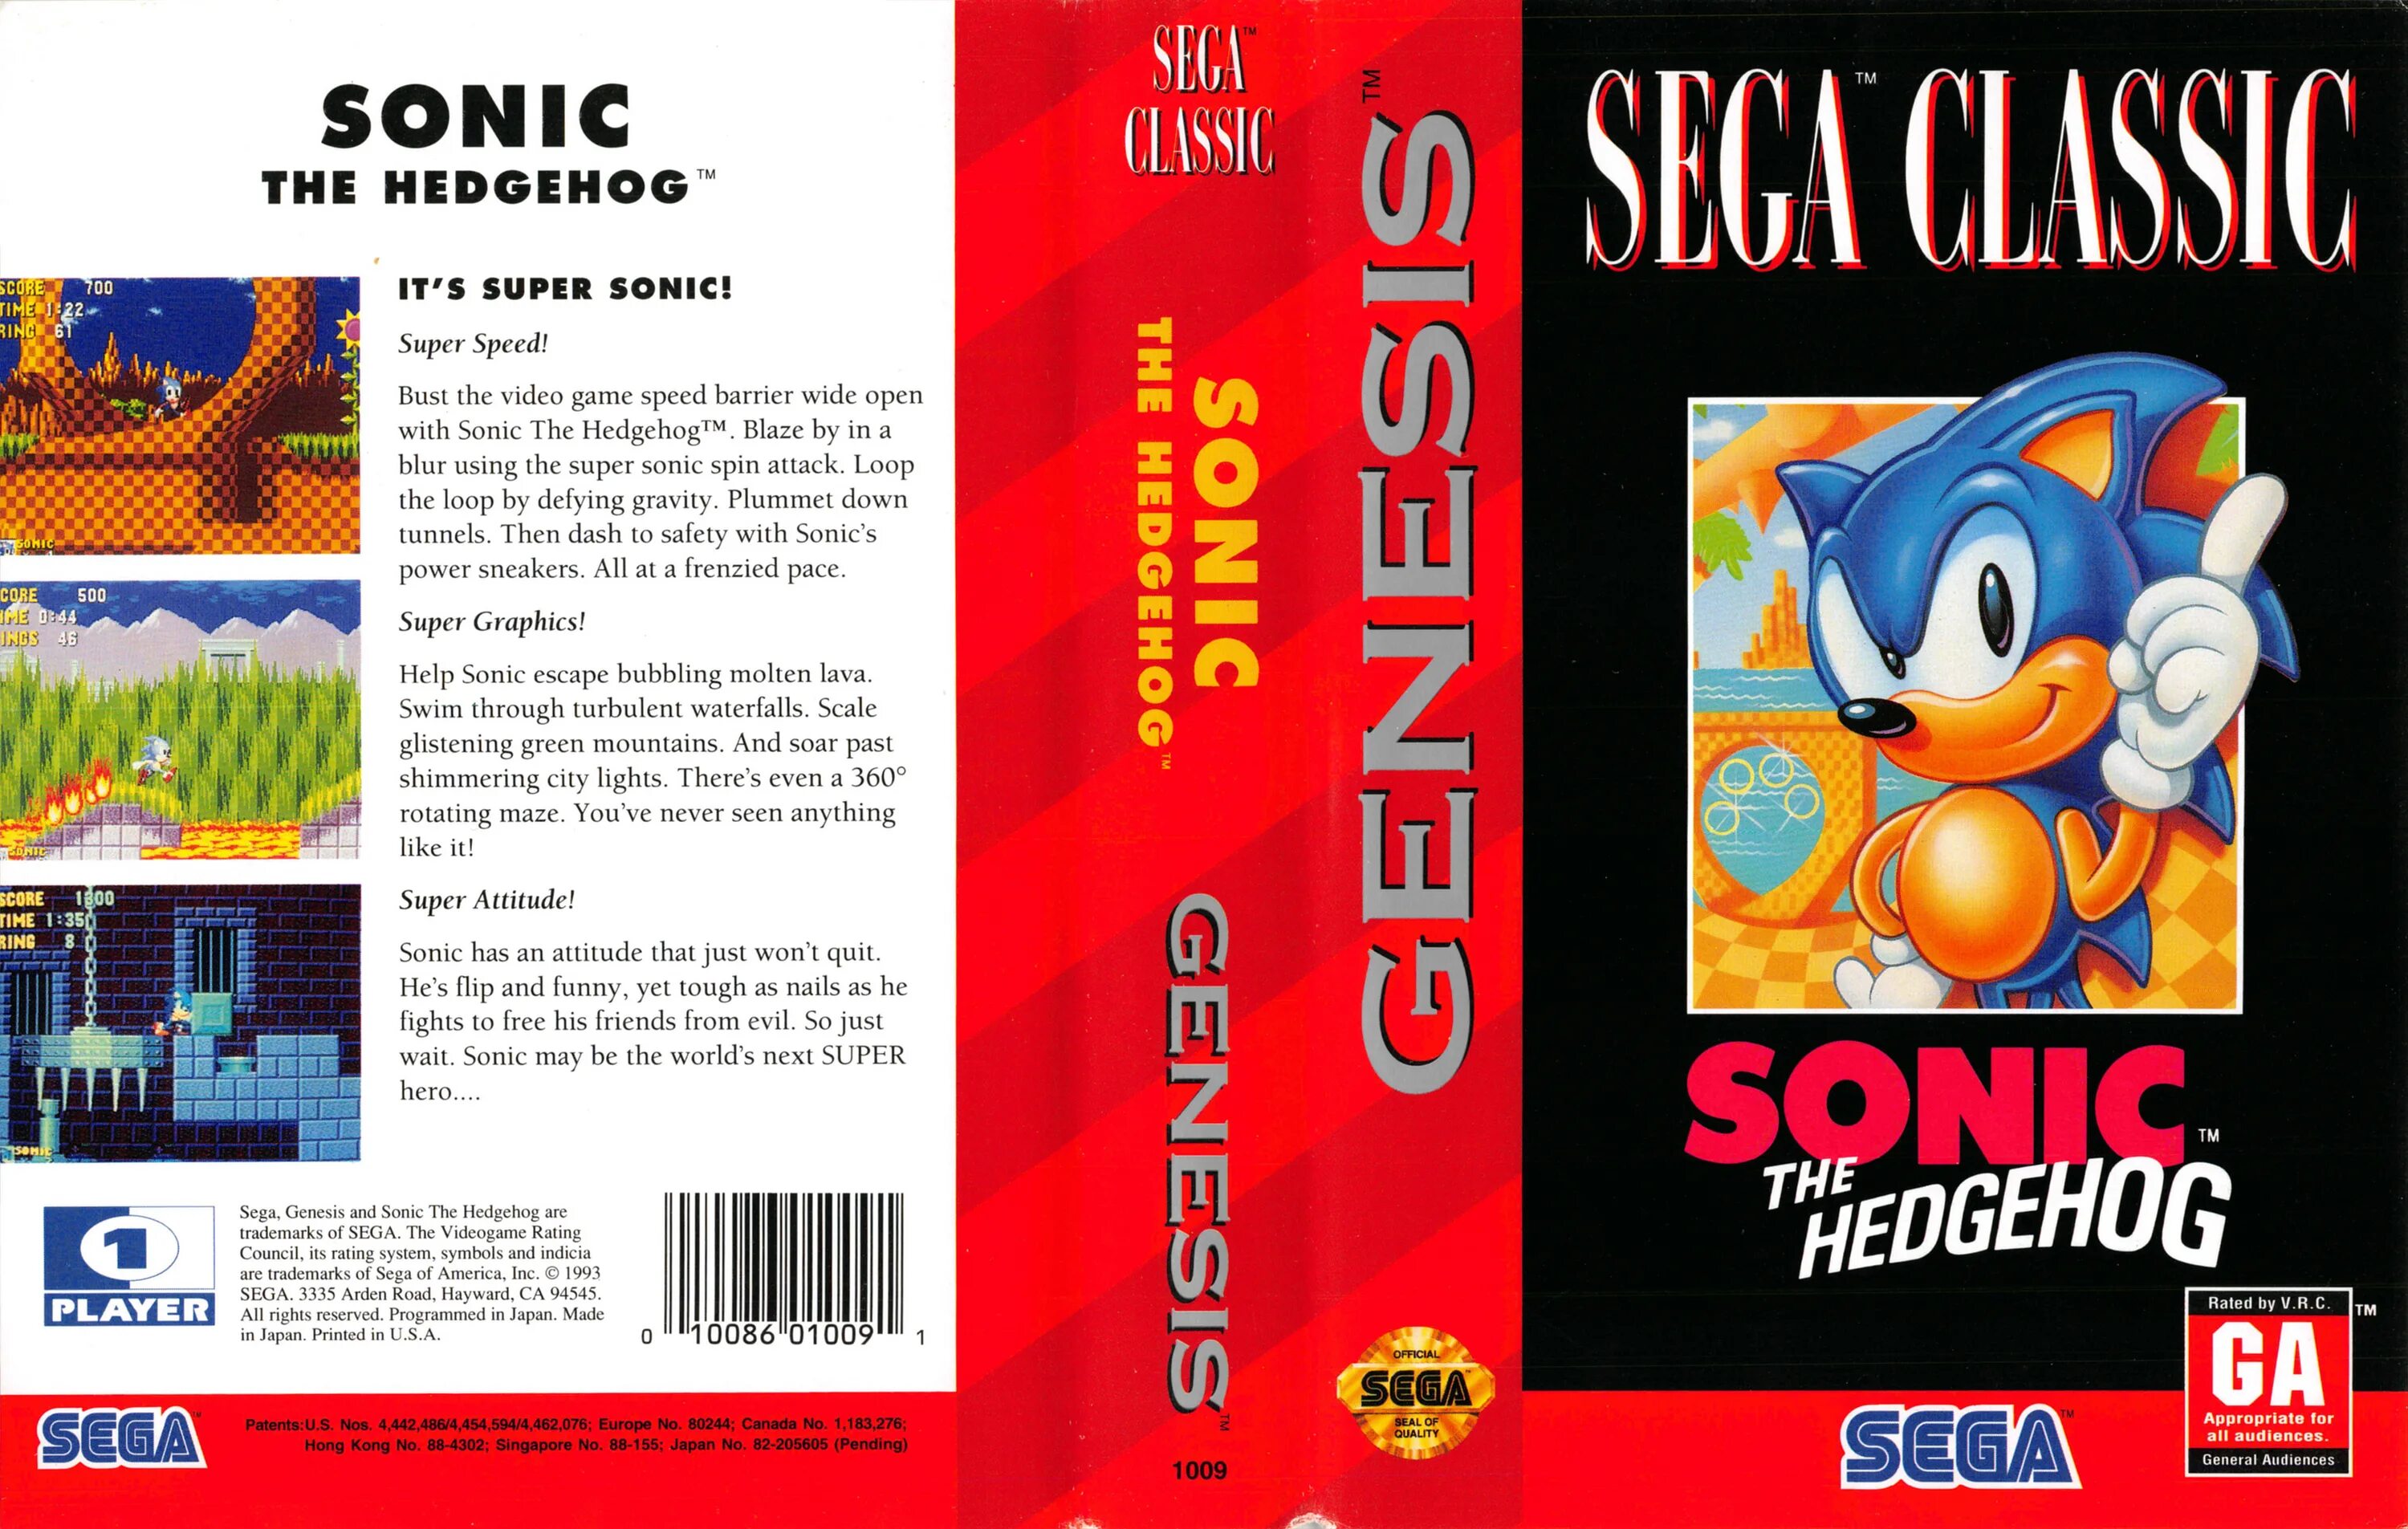 Sonic на сеге. Sonic the Hedgehog 1 16 бит. Соник игра сега 1991. Sonic the Hedgehog 1991 обложка. Sonic the Hedgehog Sega Genesis обложка.